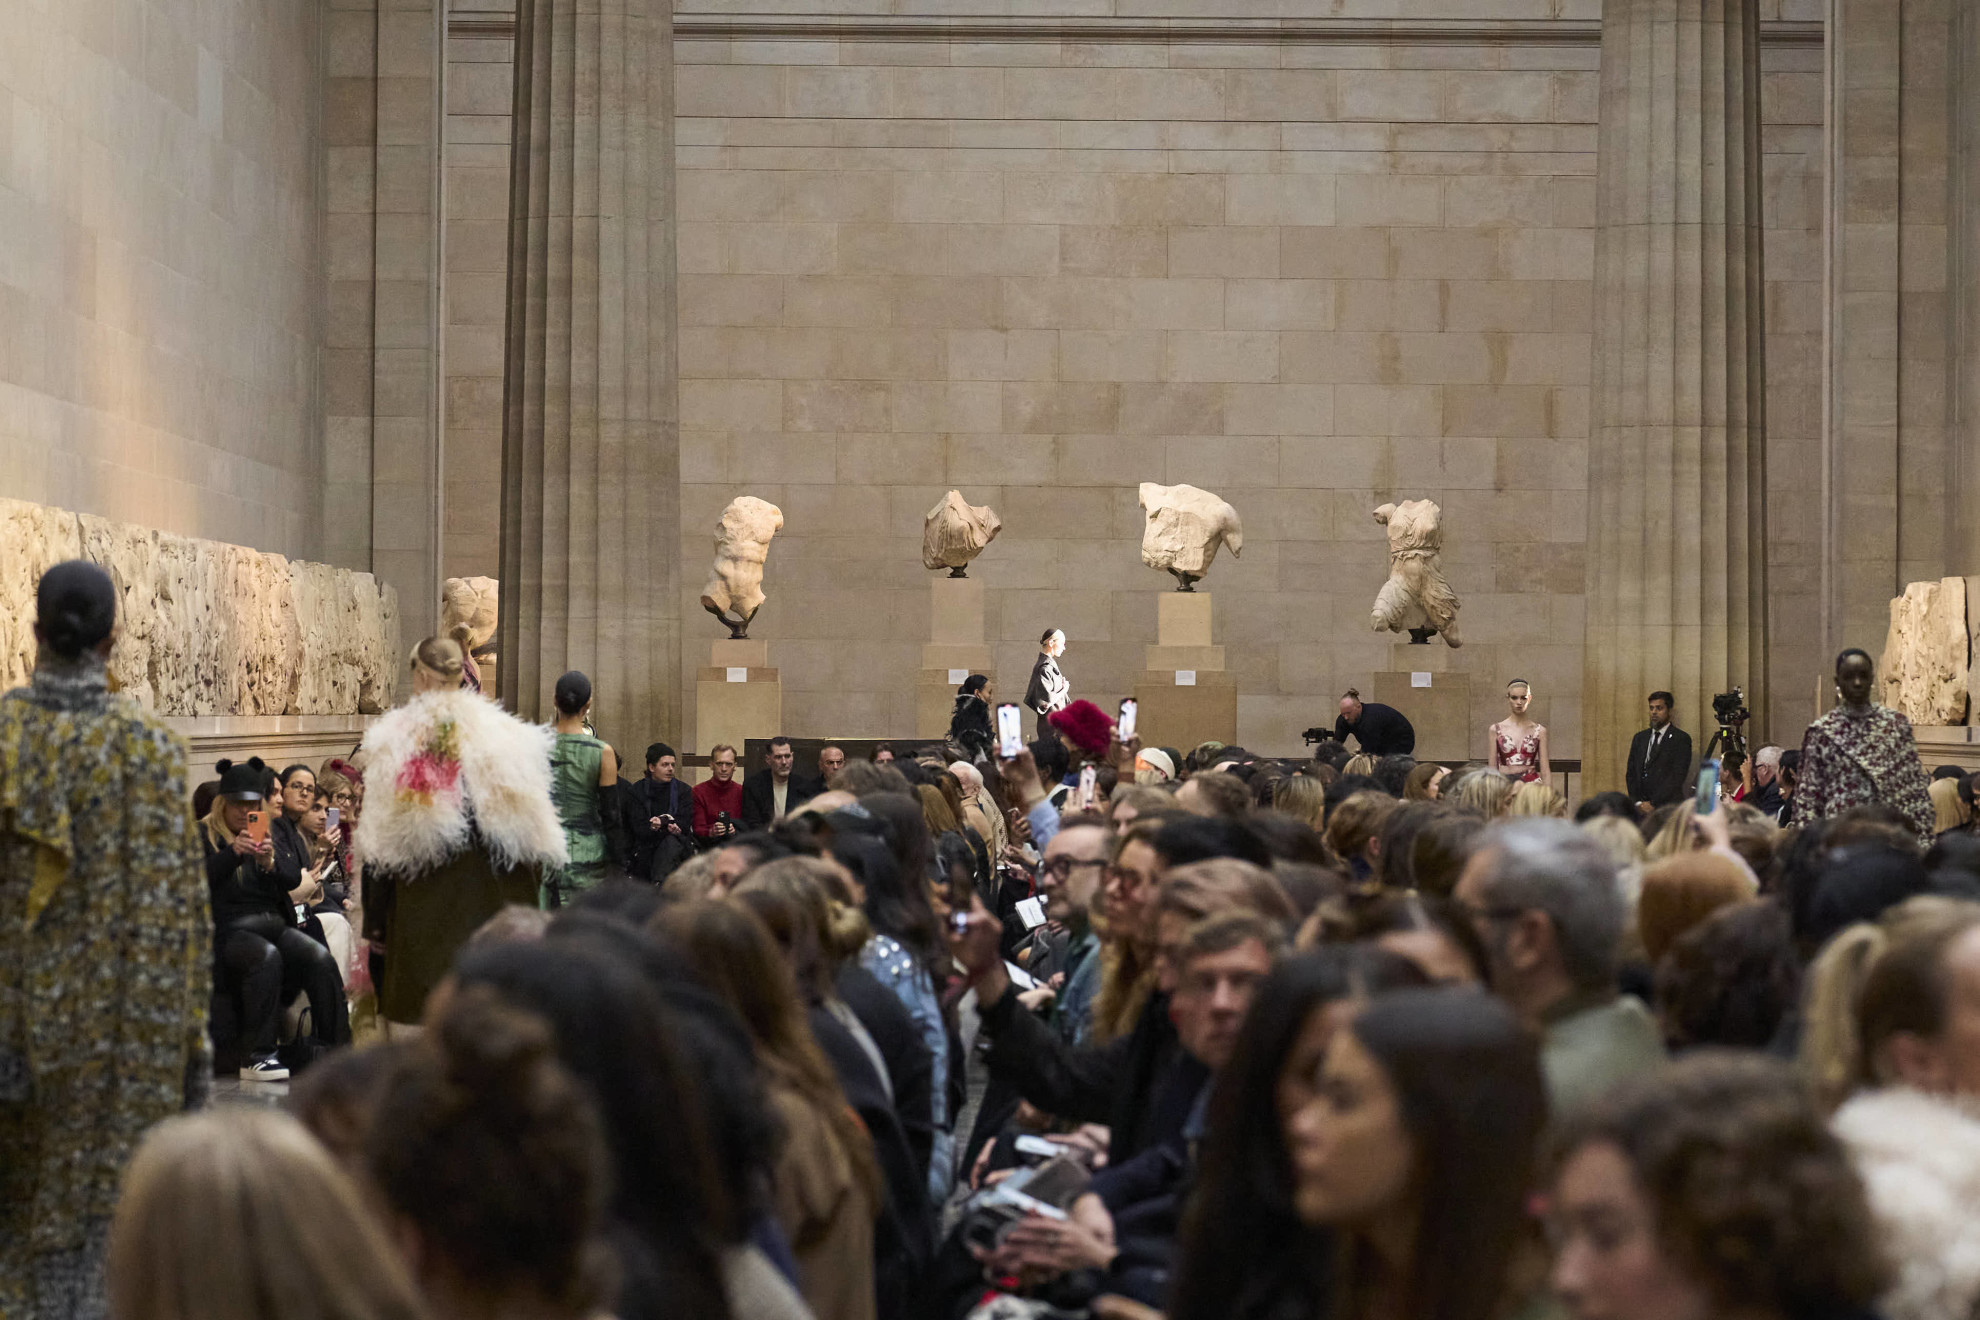 Βρετανικό Μουσείο:Το show του Τούρκου σχεδιαστή Erdem μπροστά στα γλυπτά του Παρθενώνα γέννησε οργή